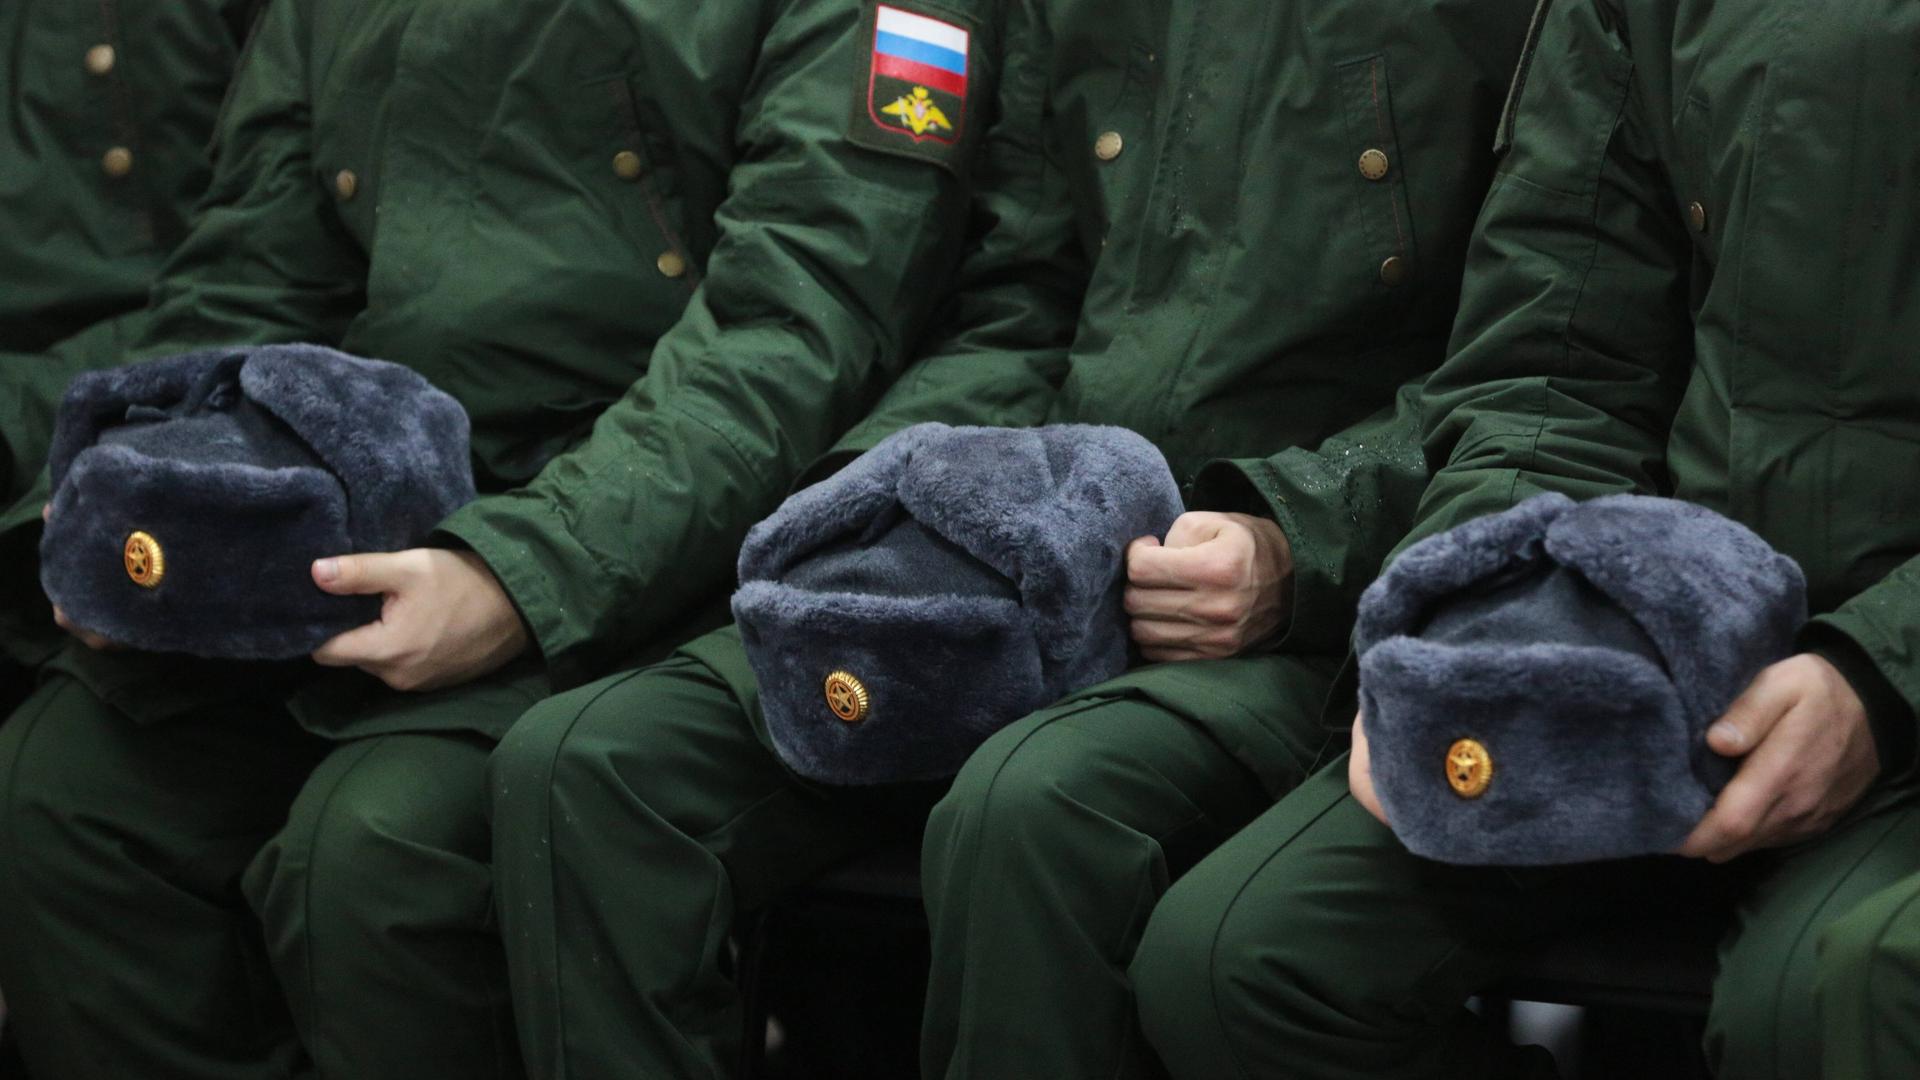 Zu sehen sind Mützen und Uniformen russischer Soldaten.